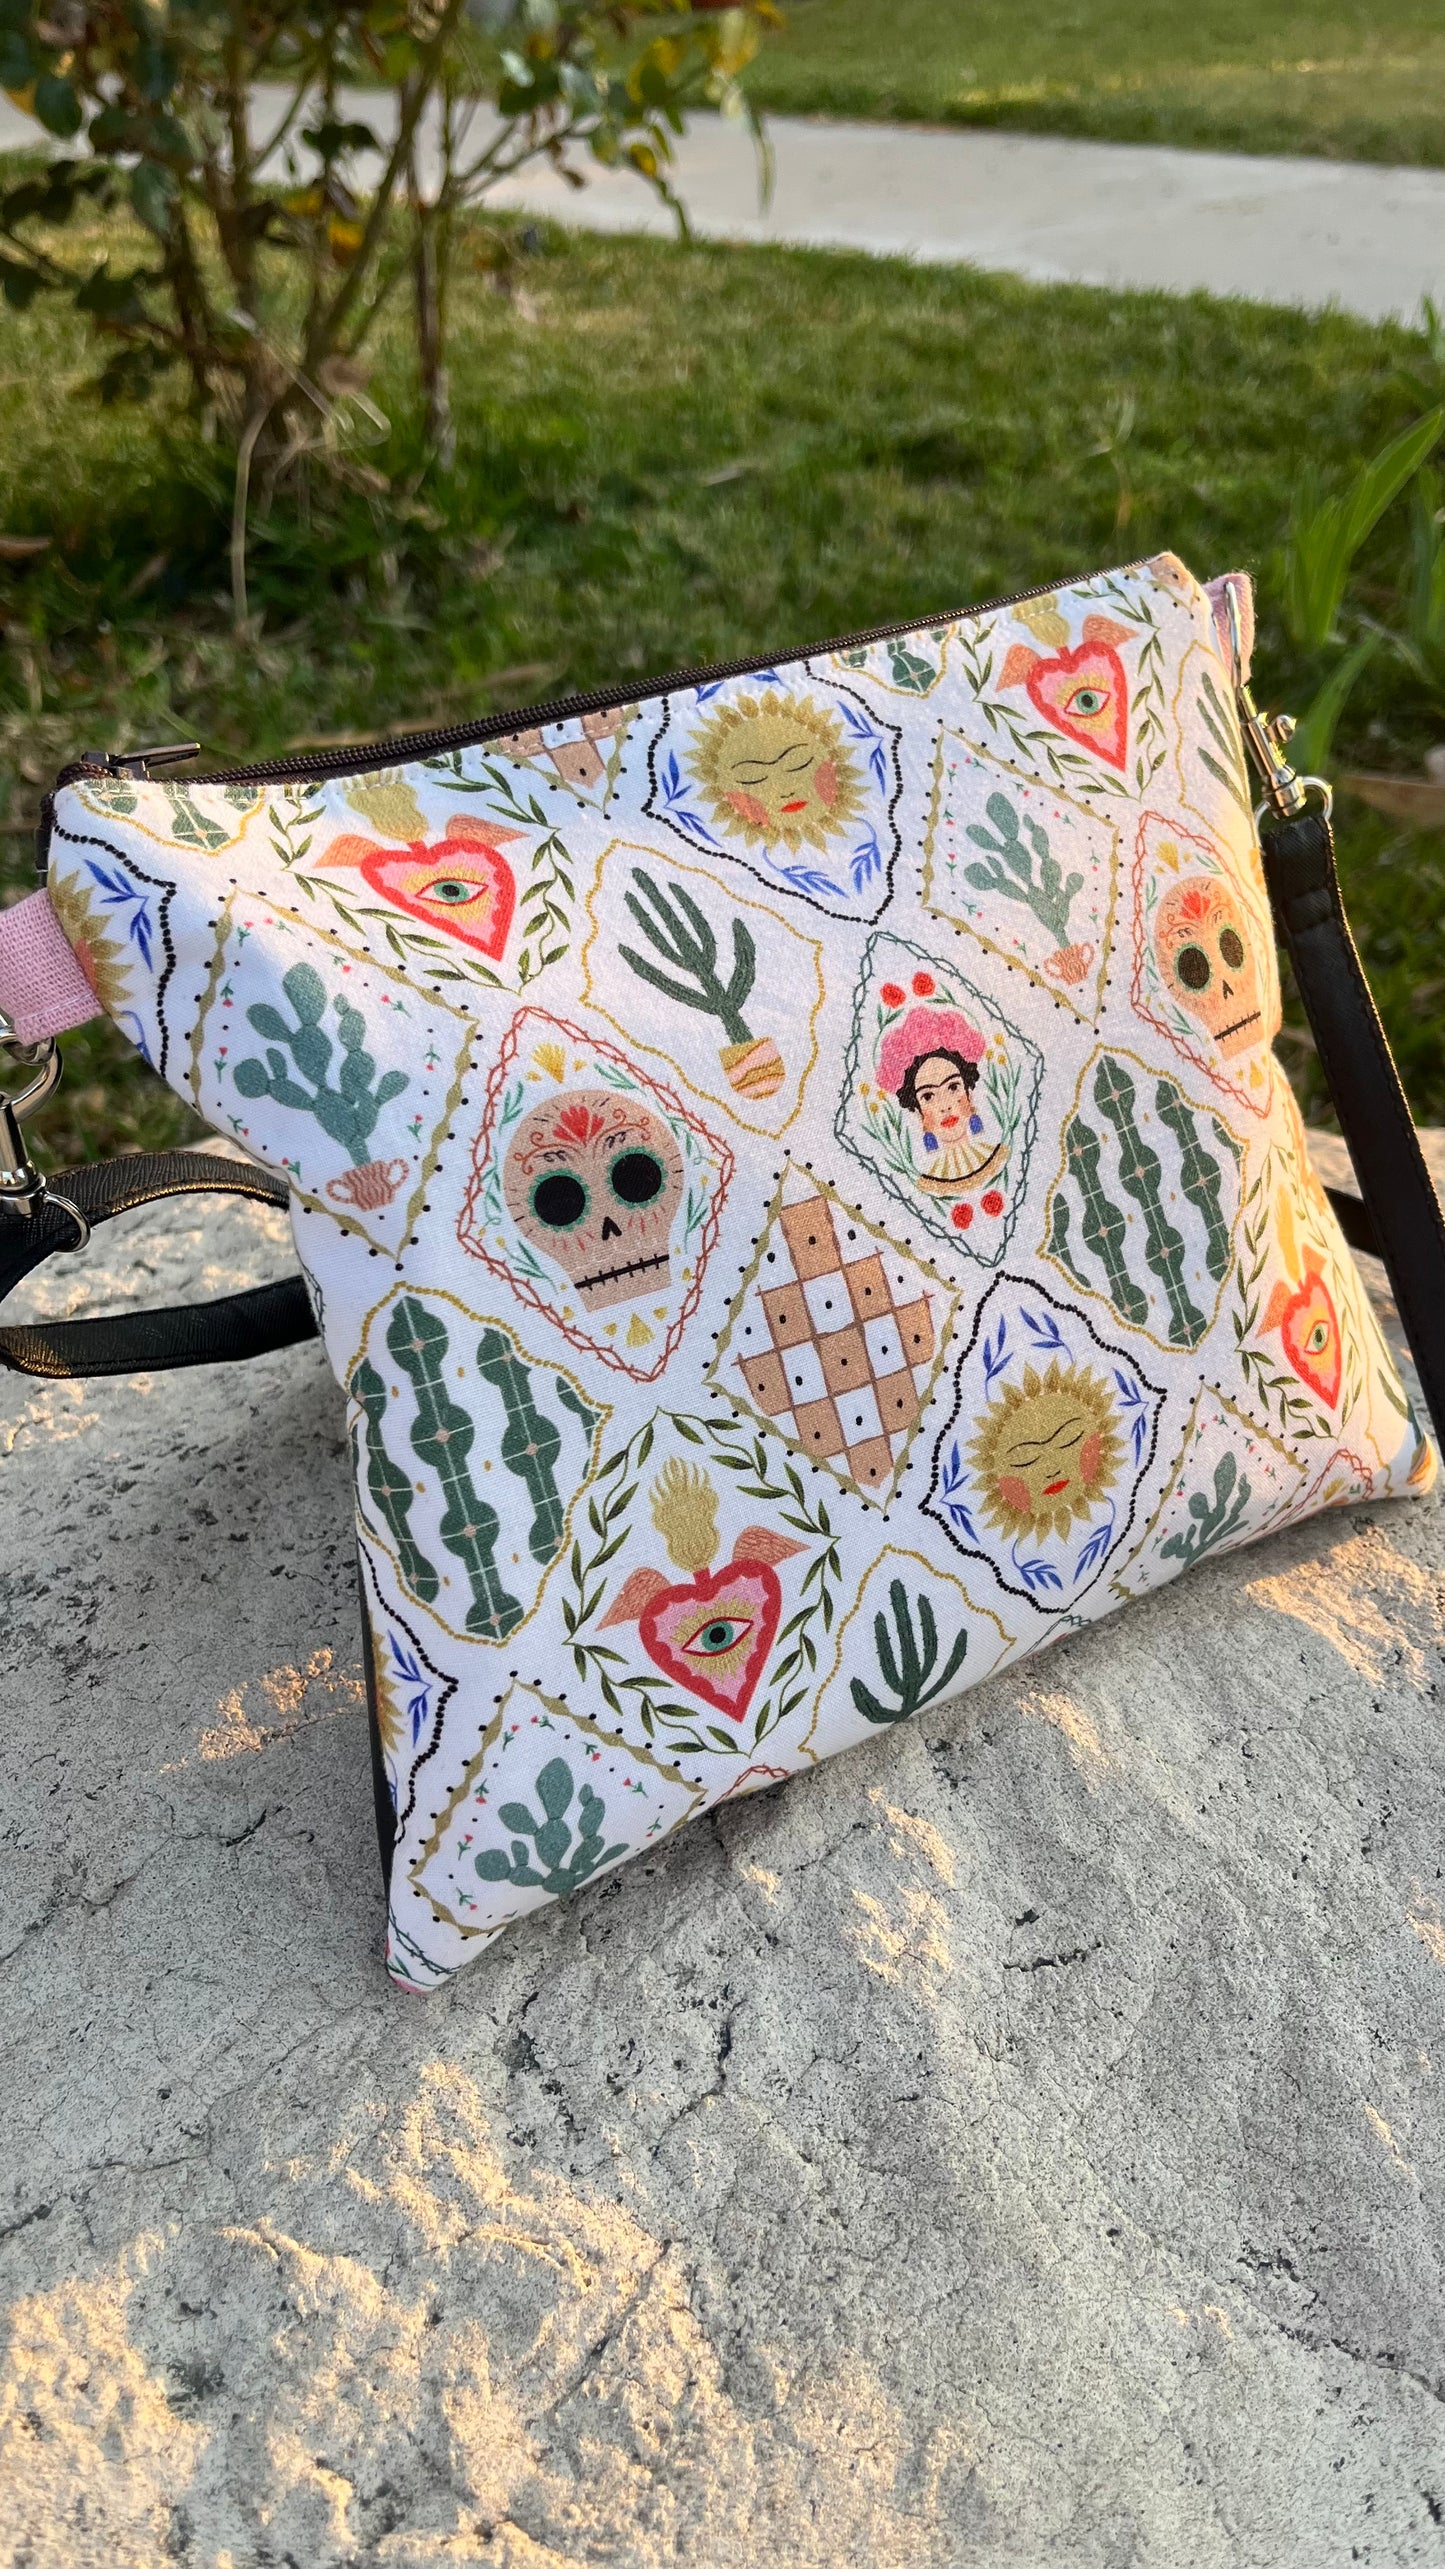 Frida in a garden Zipper Bag